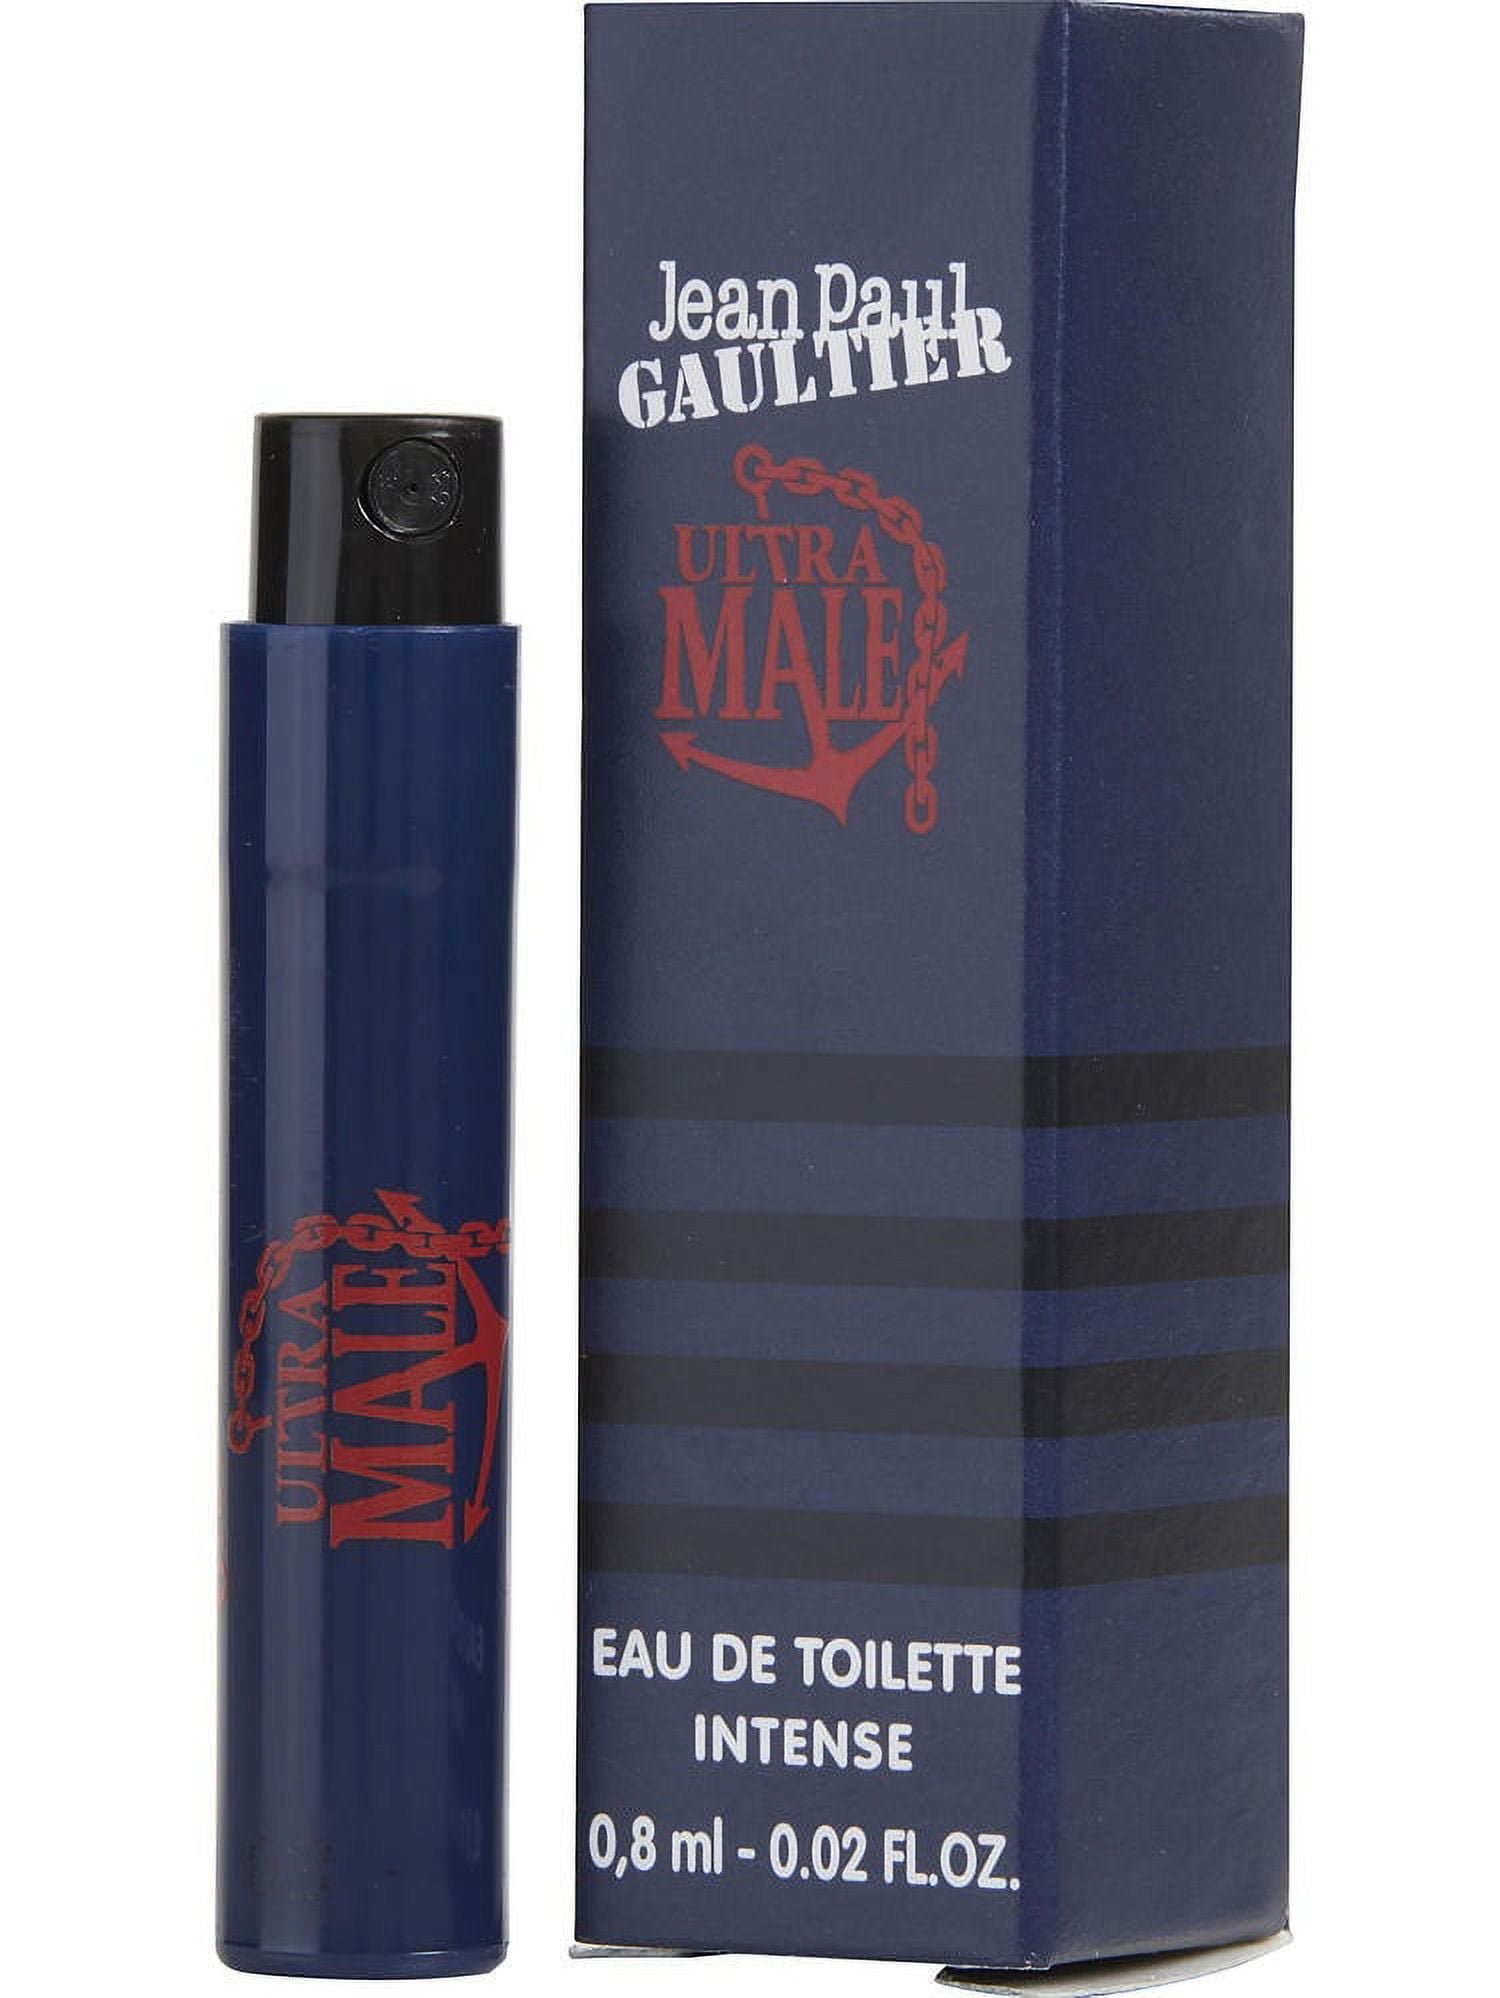 Jean Paul Gaultier Ultra Male Eau De Toilette Intense Spray buy to Mali.  CosmoStore Mali